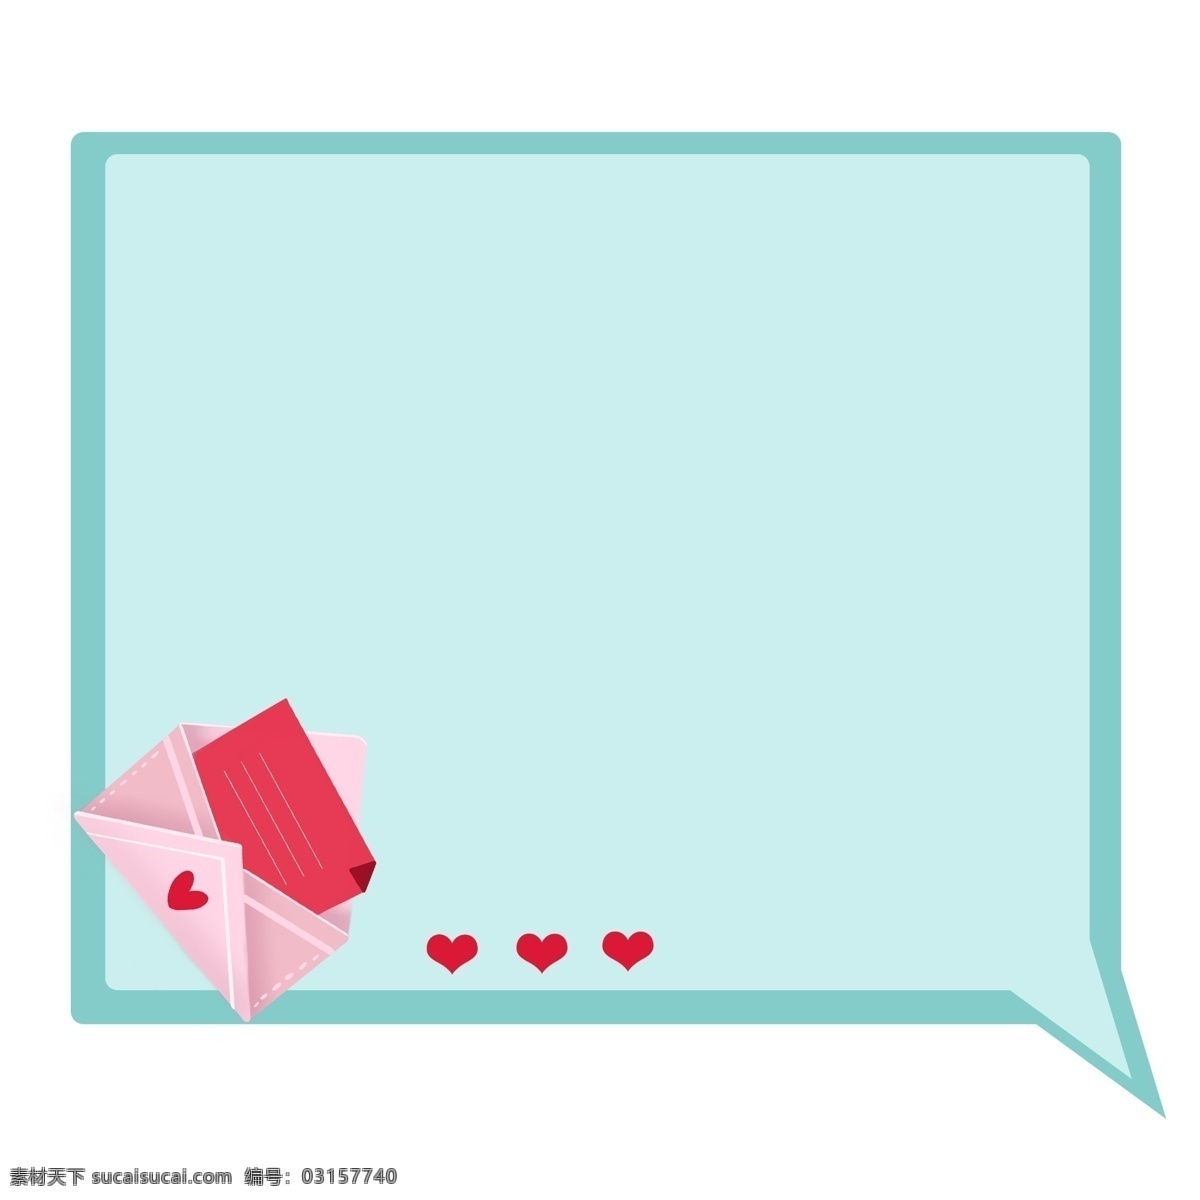 爱情 信件 对话框 插画 蓝色对话框 插图 爱情对话框 信件对话框 情书对话框 红色爱心